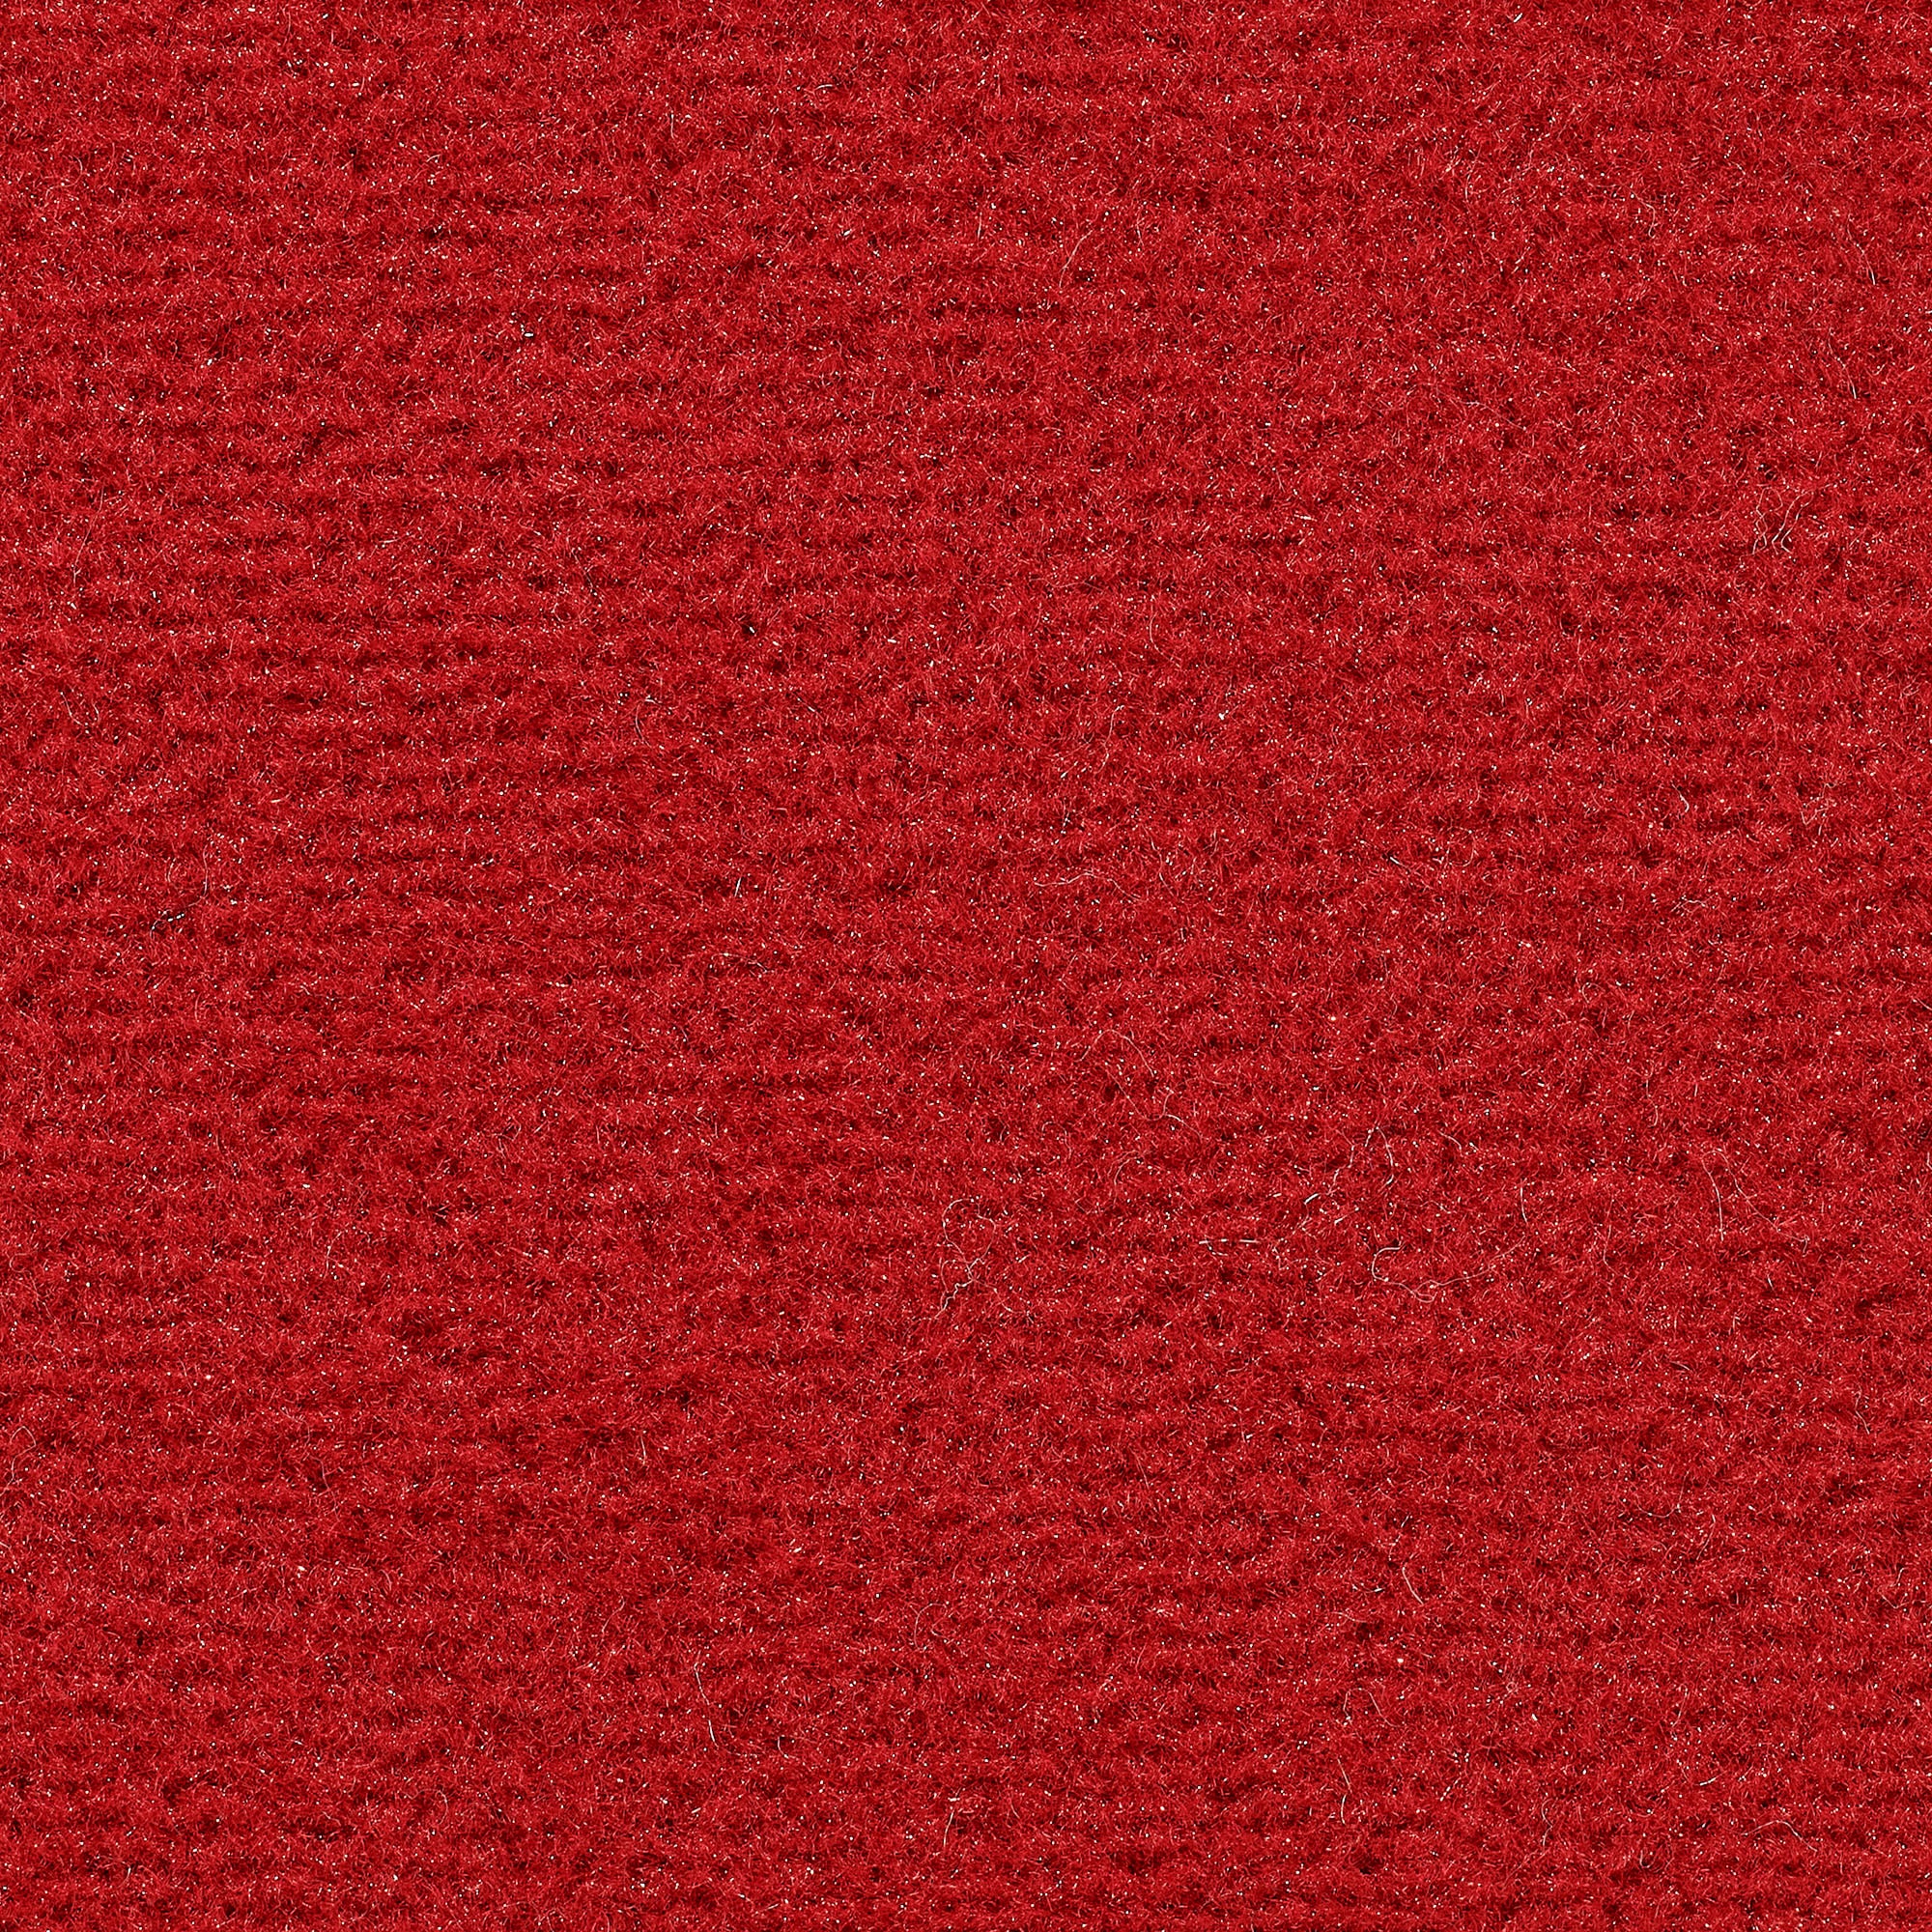 Vorwerk Teppichboden »Veloursteppich Passion 1021 (Bingo)«, rechteckig, Wohnzimmer, Schlafzimmer, Kinderzimmer, Breite 400/500 cm